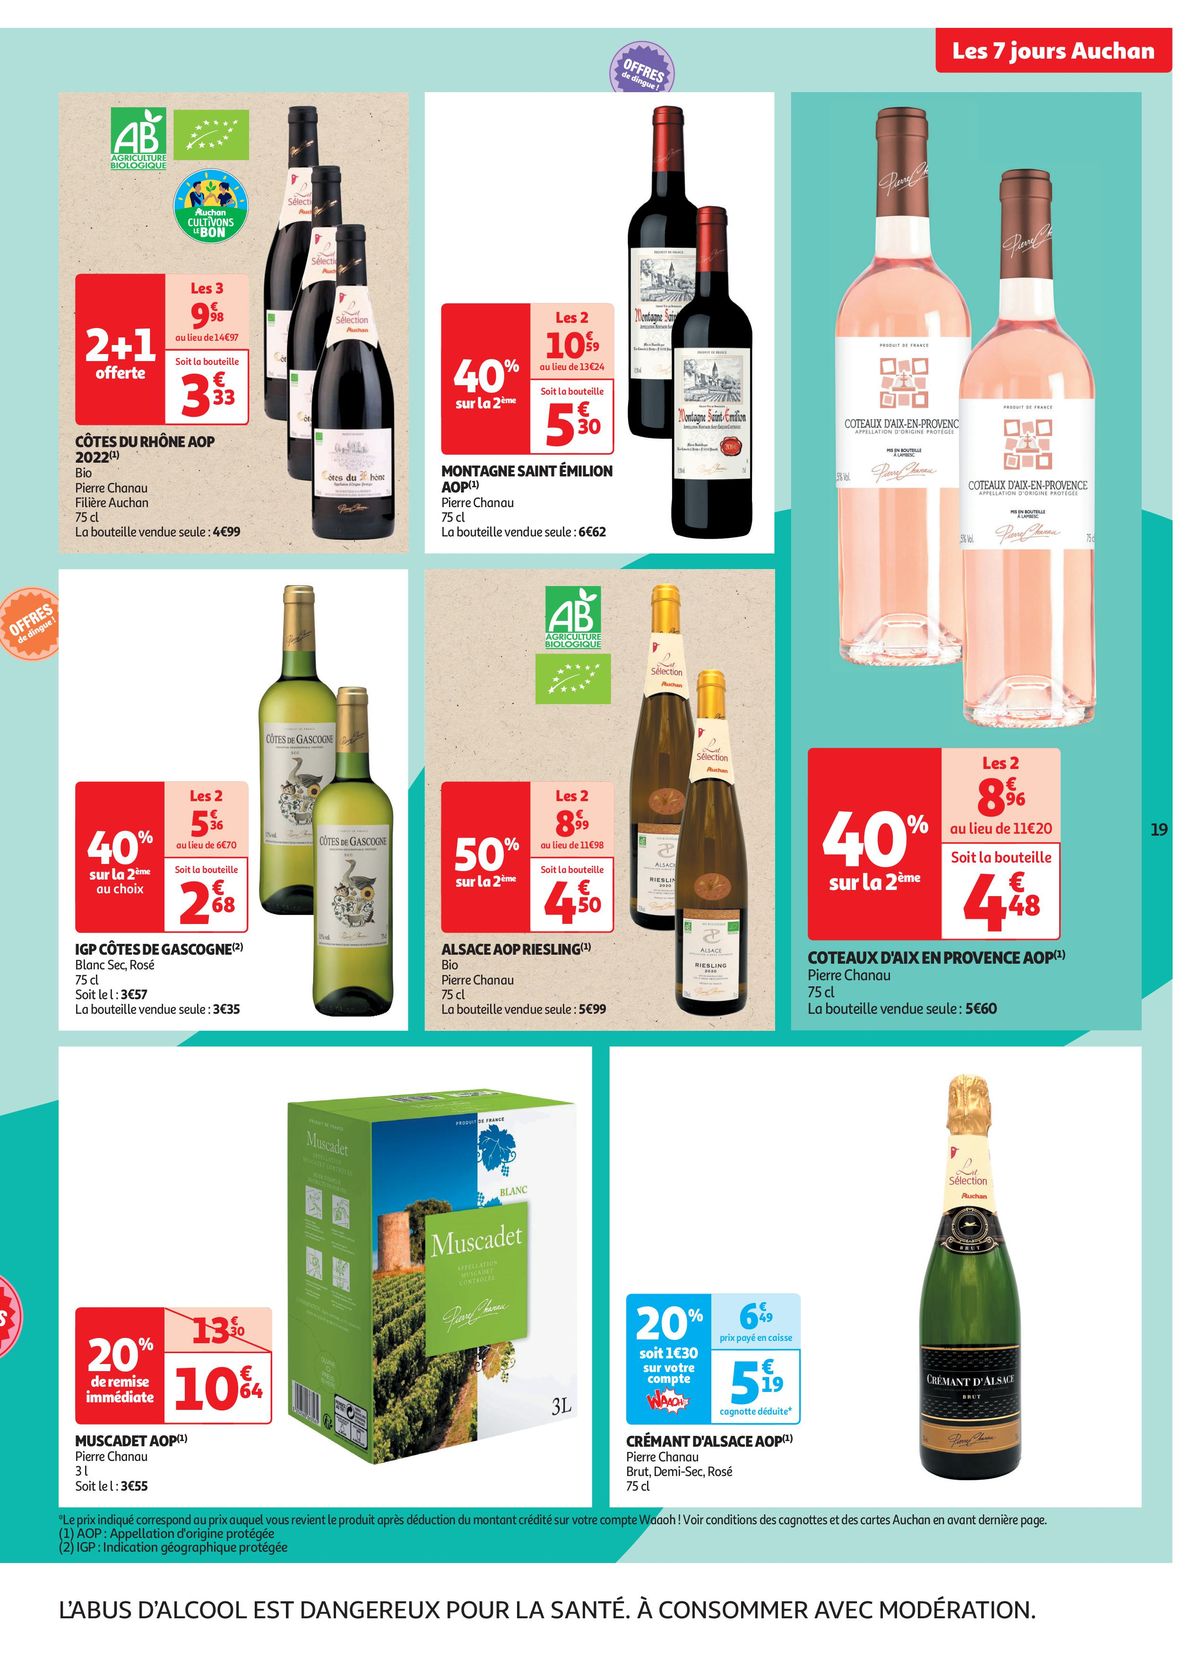 Catalogue C'est les 7 jours Auchan dans votre super !, page 00019